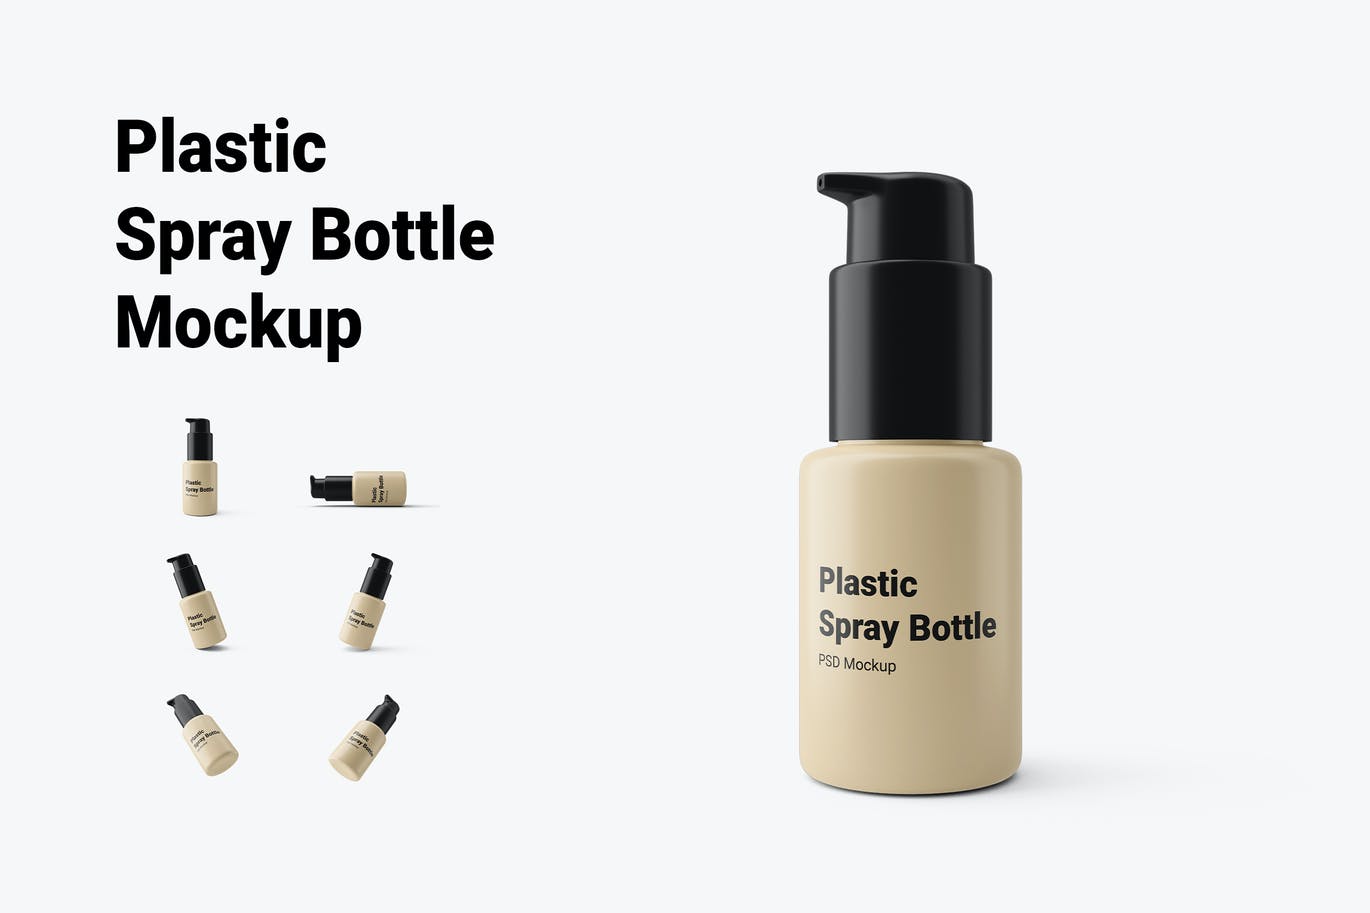 小尺寸塑料喷雾瓶包装设计样机 (PSD)